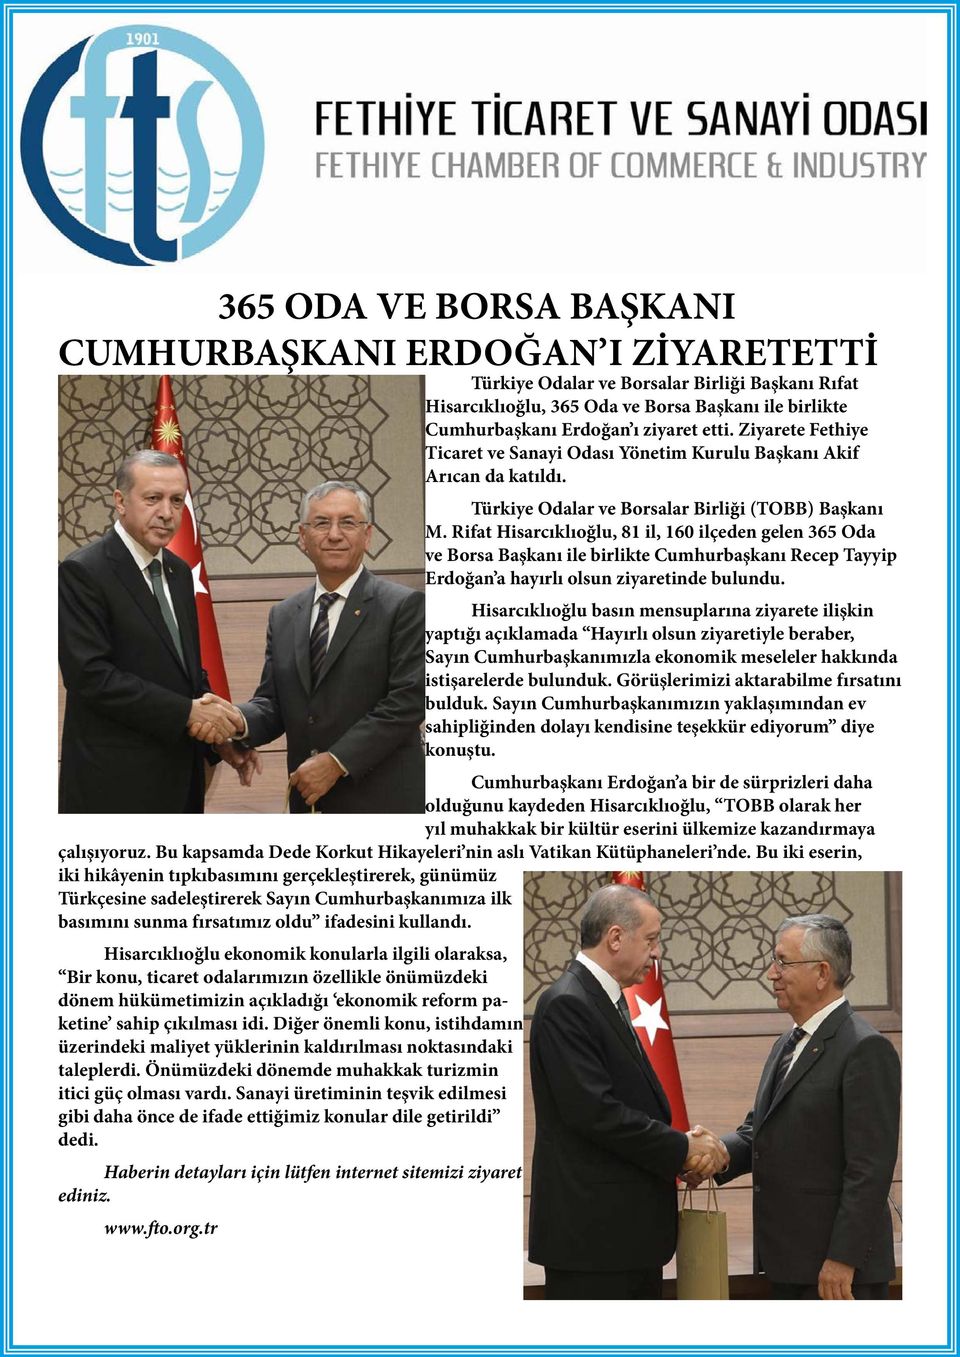 Rifat Hisarcıklıoğlu, 81 il, 160 ilçeden gelen 365 Oda ve Borsa Başkanı ile birlikte Cumhurbaşkanı Recep Tayyip Erdoğan a hayırlı olsun ziyaretinde bulundu.